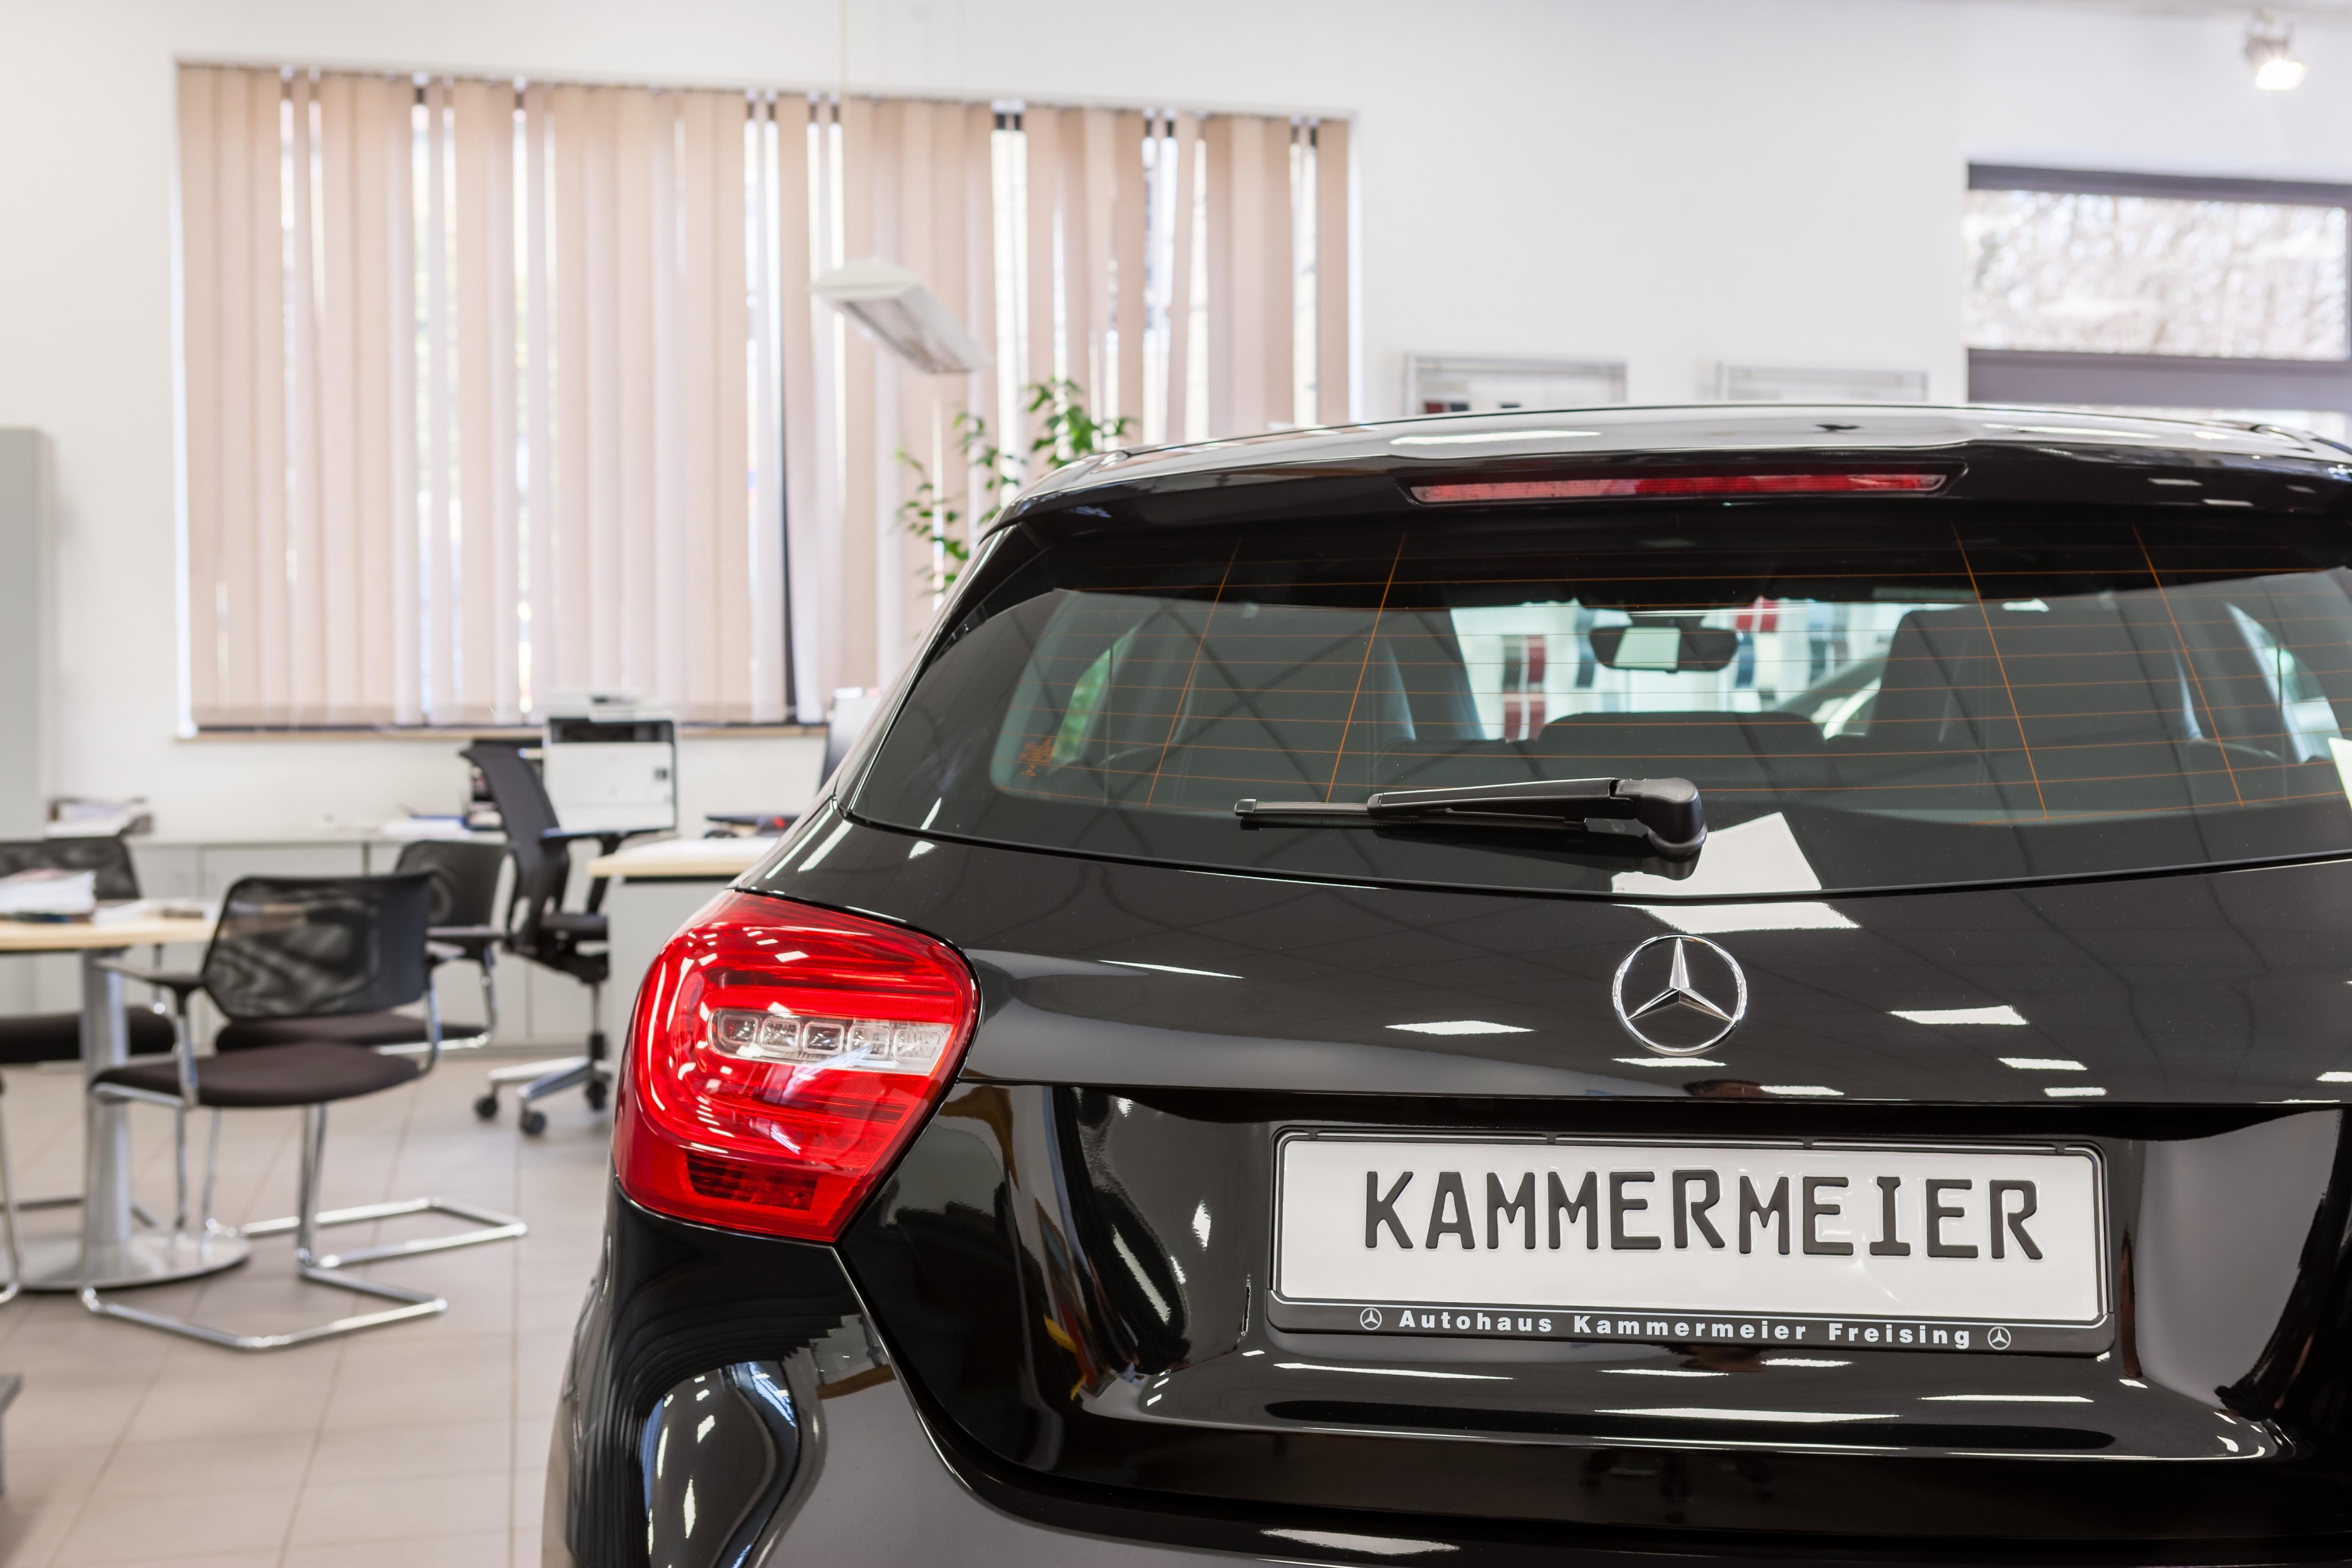 Kundenbild groß 1 Karl Kammermeier GmbH Co. KG